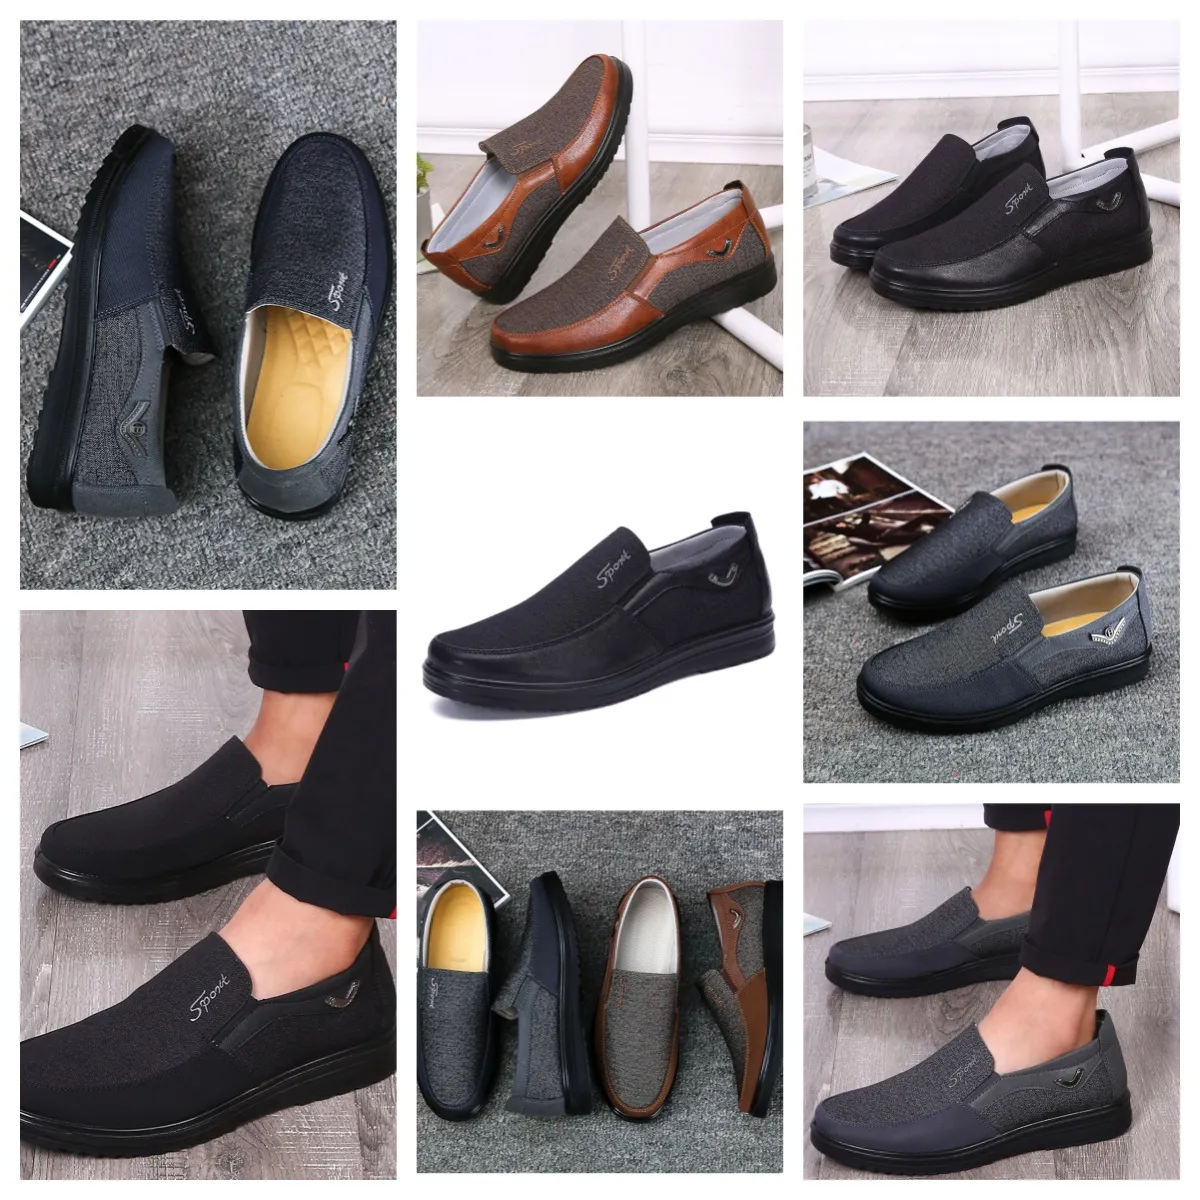 Gai conforto sapatos masculinos sapatos pretos dedo do pé redondo festa ao ar livre ternos de banquete masculino negócios calcanhar designer sapatos eur 38-50 softs